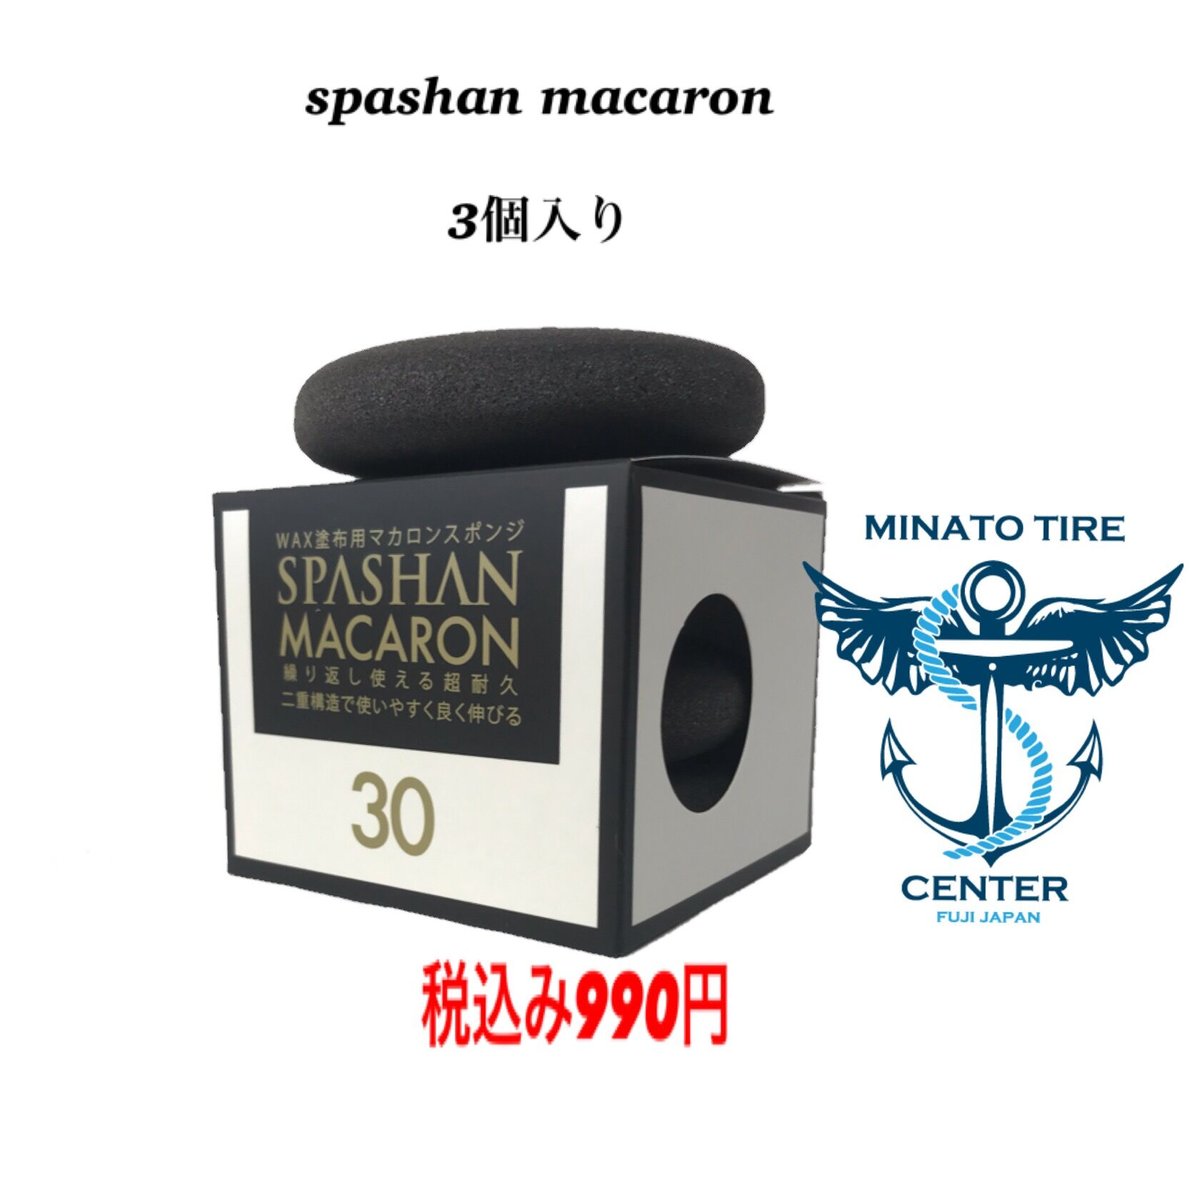 スパシャン マカロン １箱３個入り990円 色んなシチュエーションで使われます。 スパシ...